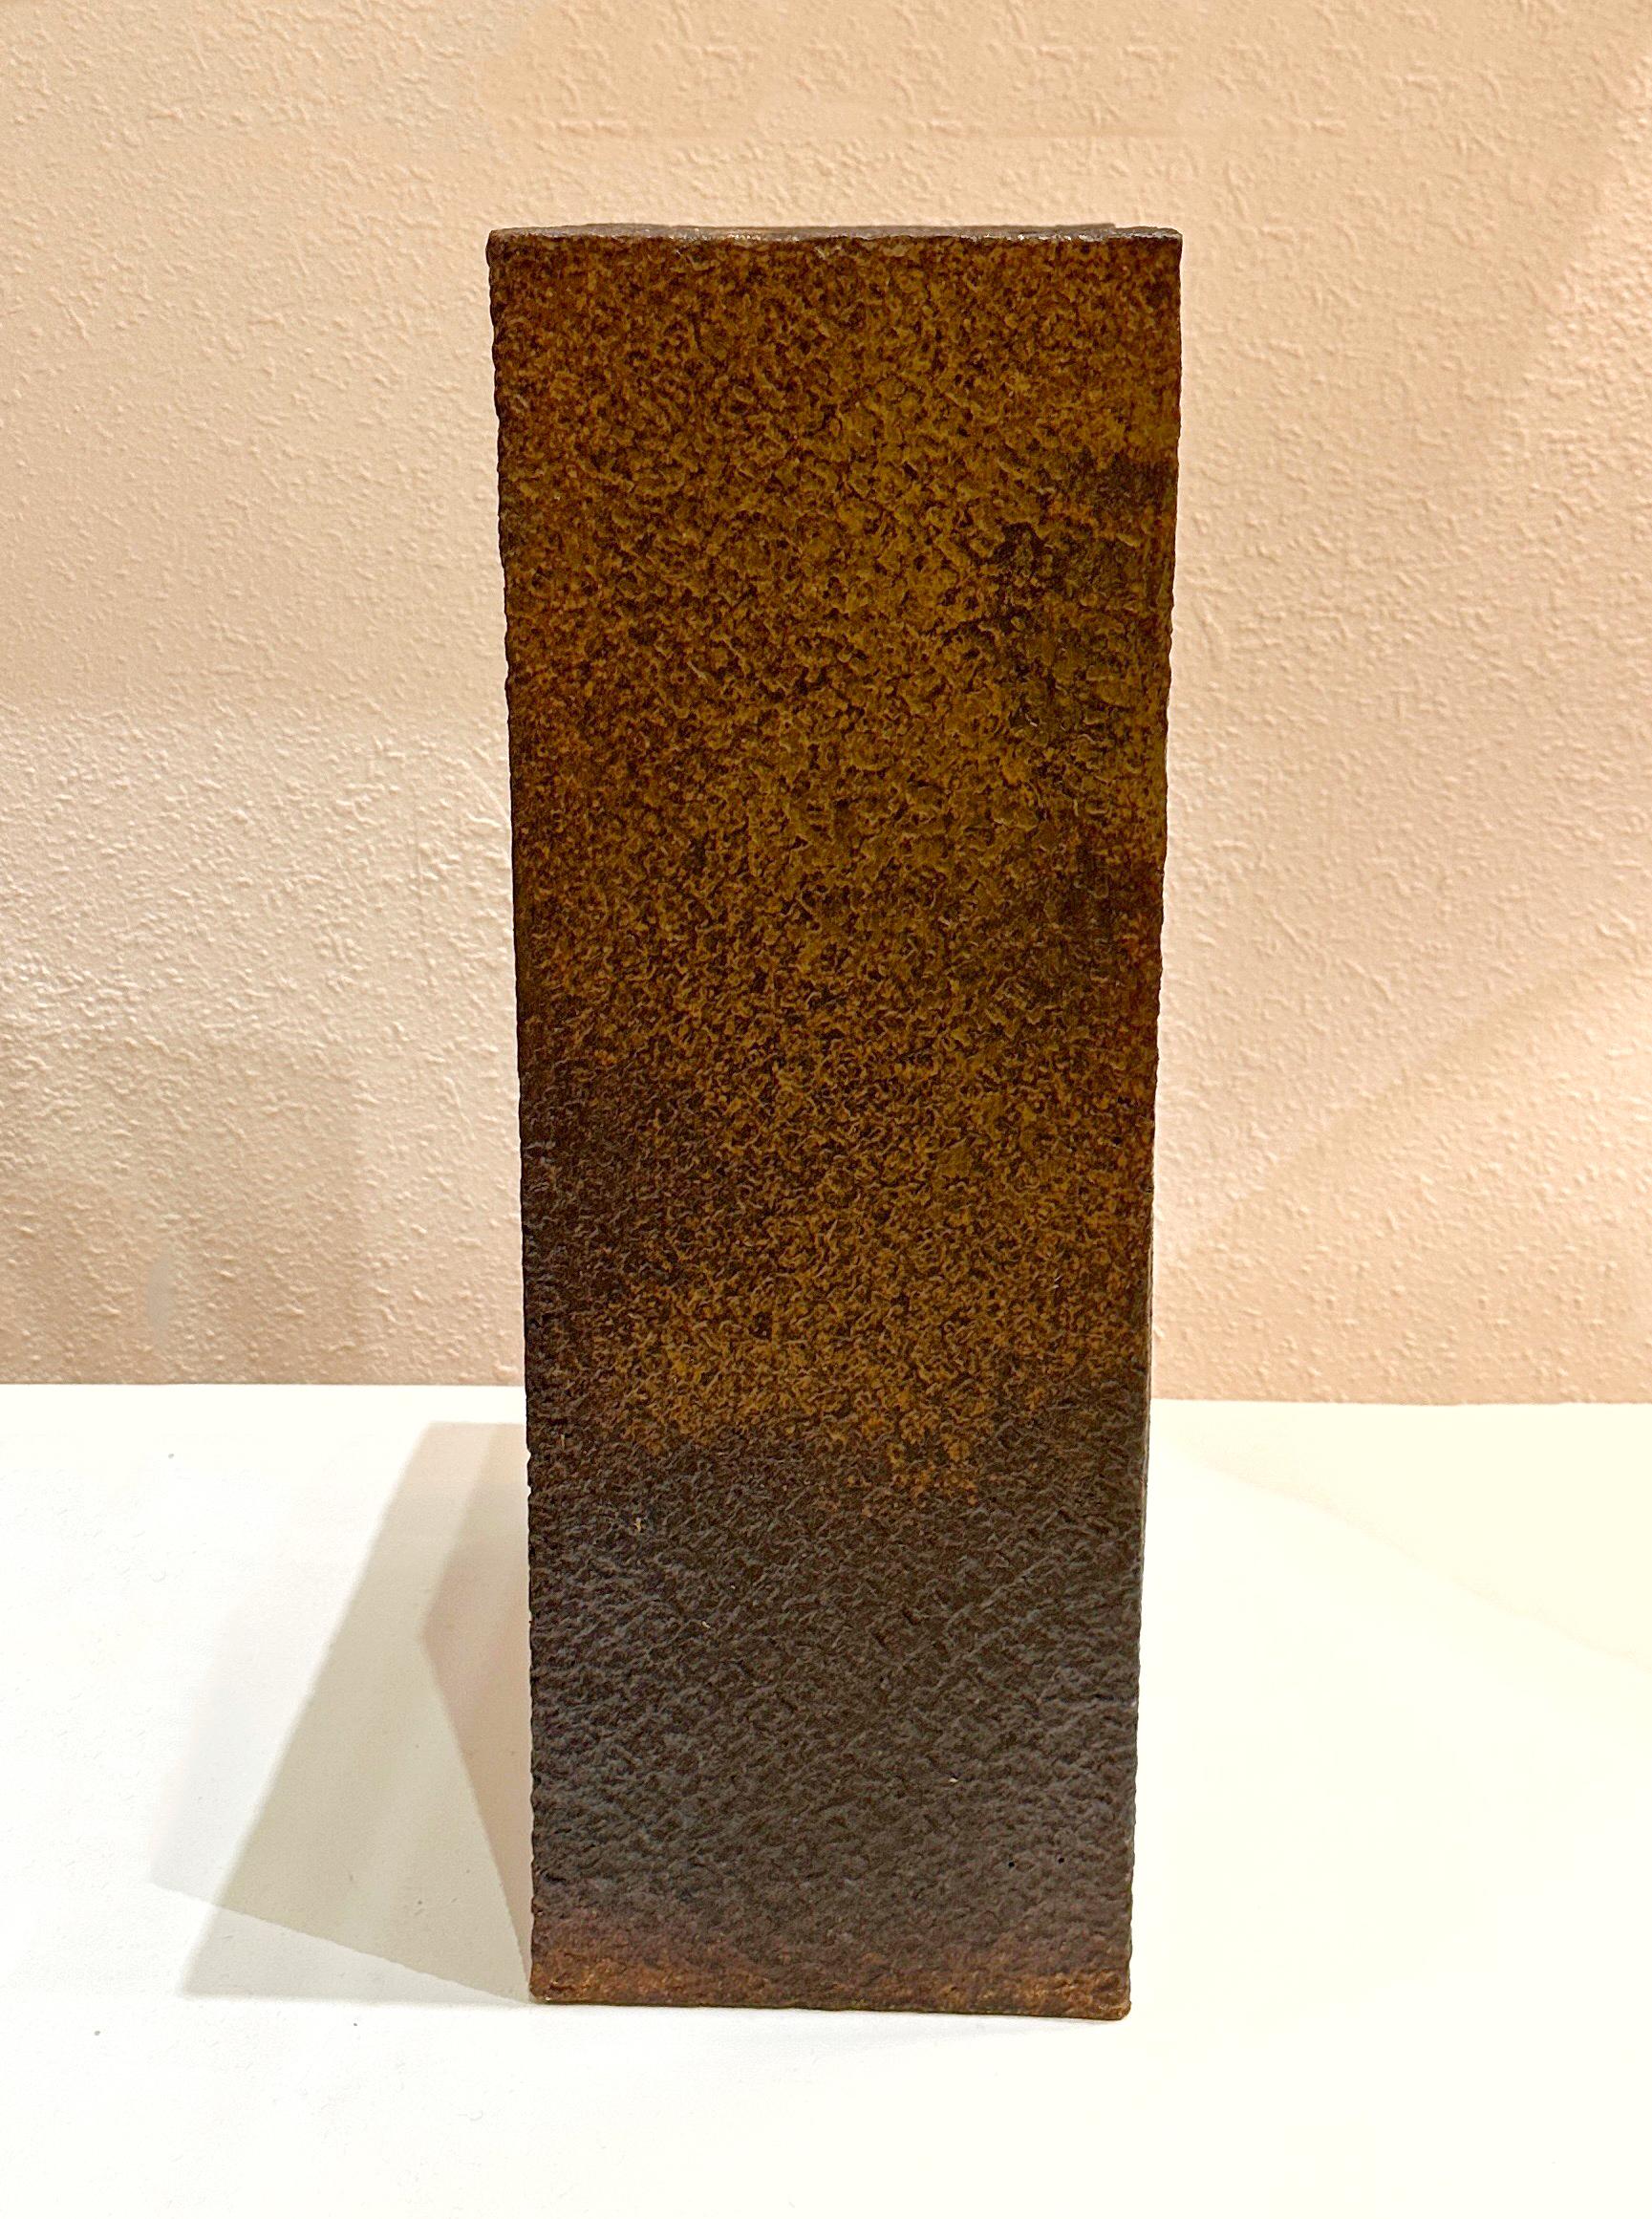 Late 20th Century Masuo Ojima Large Scale Sculptural Post-Modern Ceramic Vase, circa 1990s For Sale